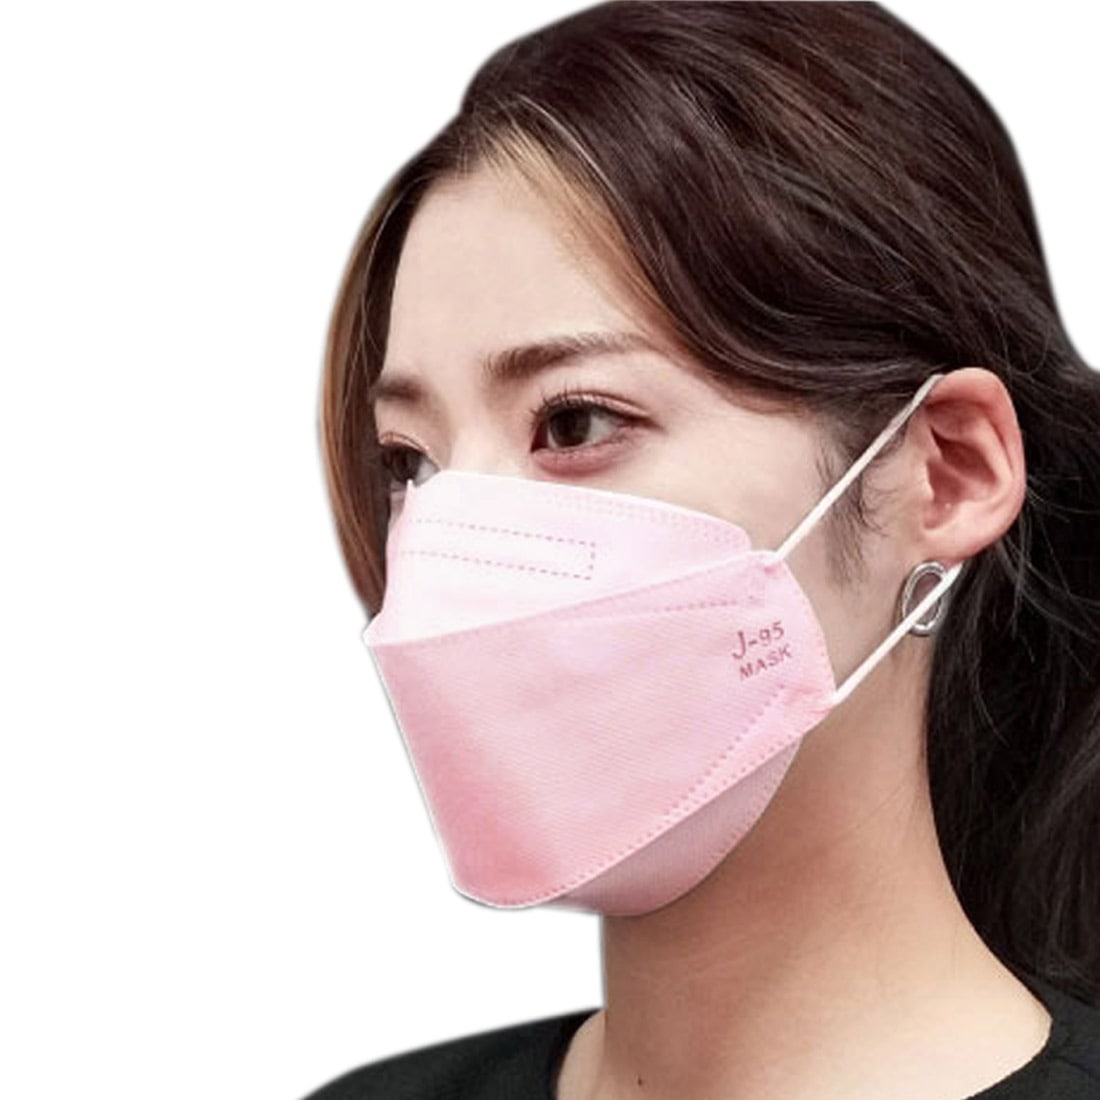 不織布マスク 立体  血色 カラー 日本製 J-95 サージカルマスク 30枚入 標準 全11色 医療用 JIS規格適合 4層 飛沫 花粉 PM2.5 個包装 おしゃれ 通年用 大人 女性 男性 標準 ライトピンク